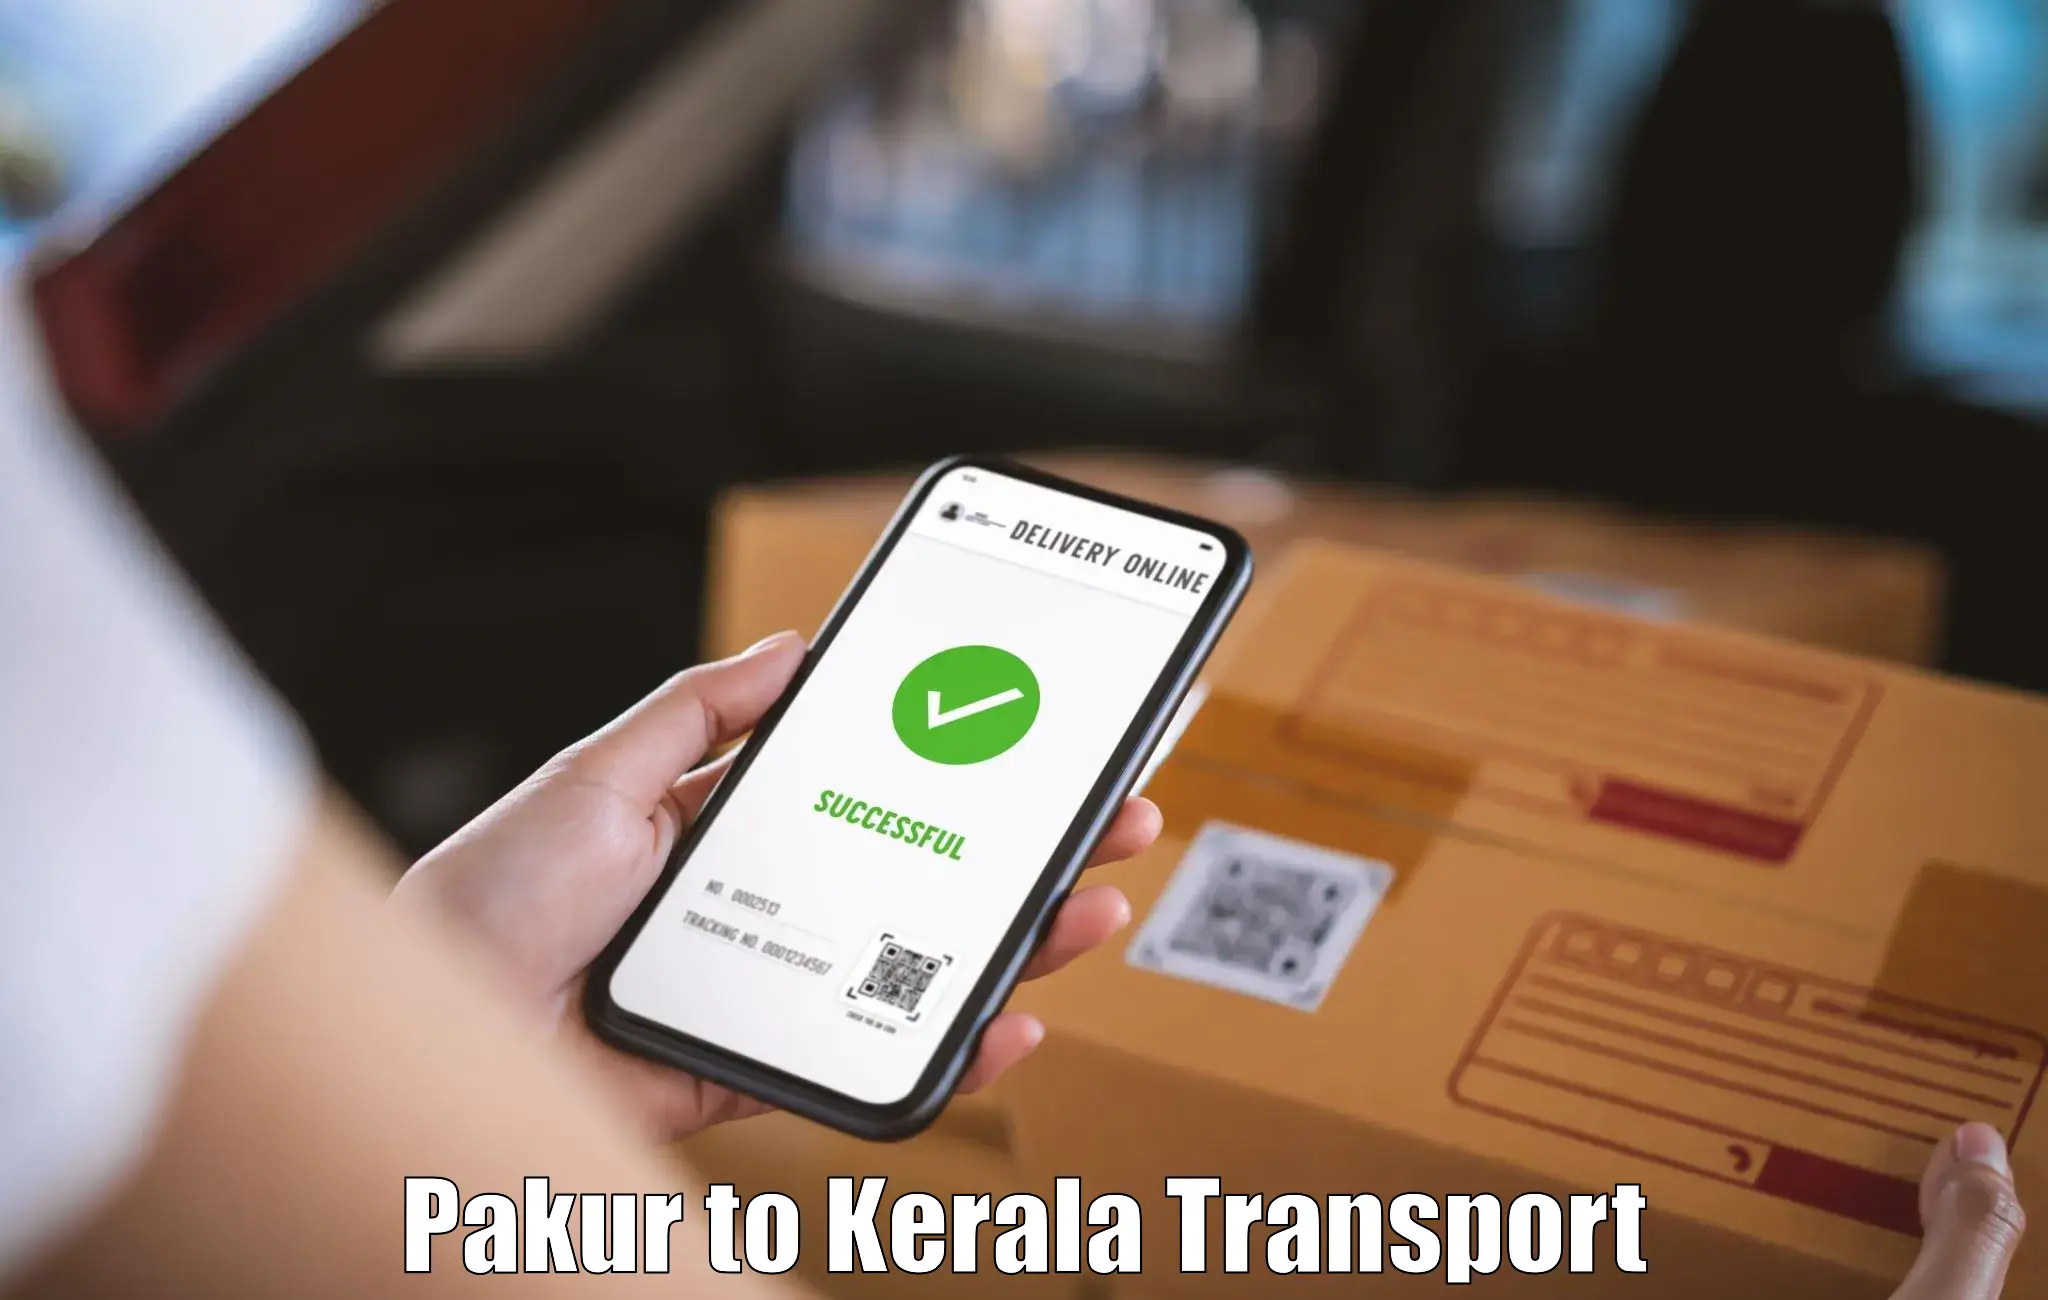 Lorry transport service Pakur to Payyanur